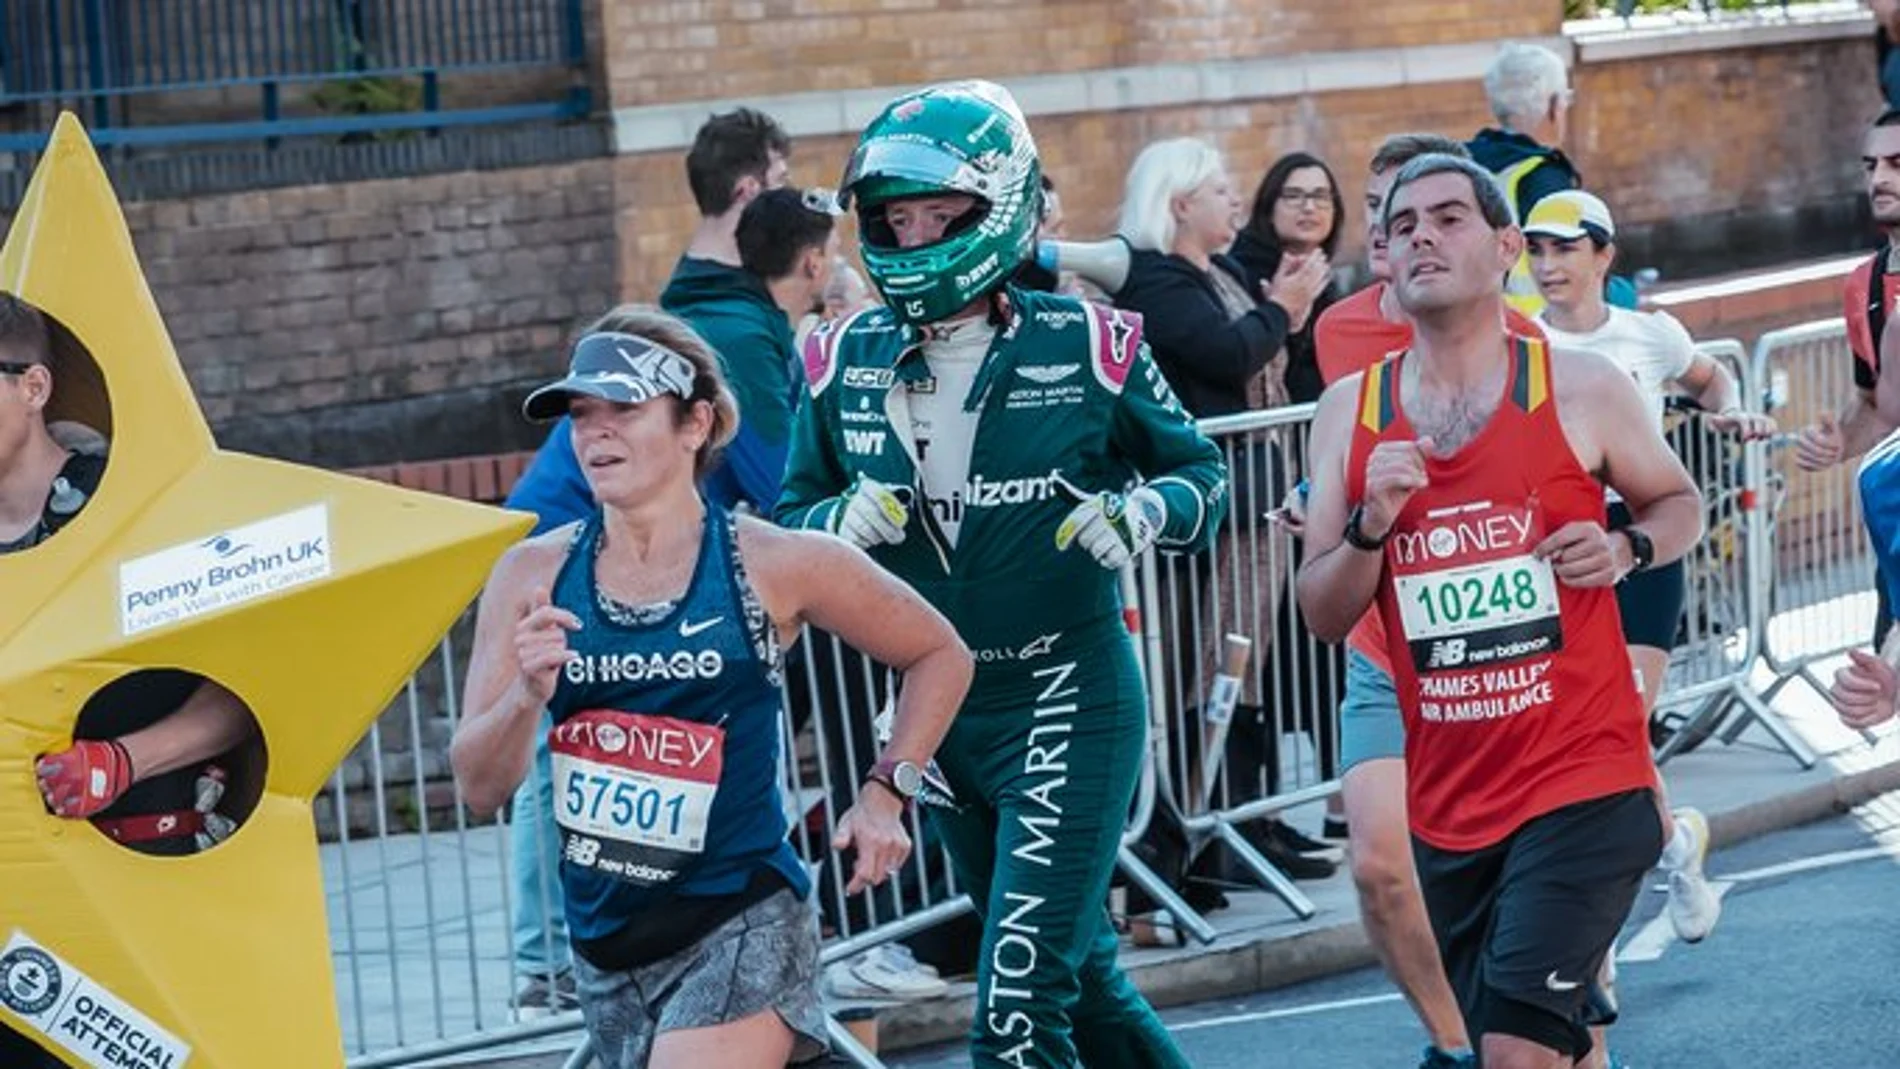 Un ingeniero de Aston Martin corre una maratón vestido por completo de  piloto